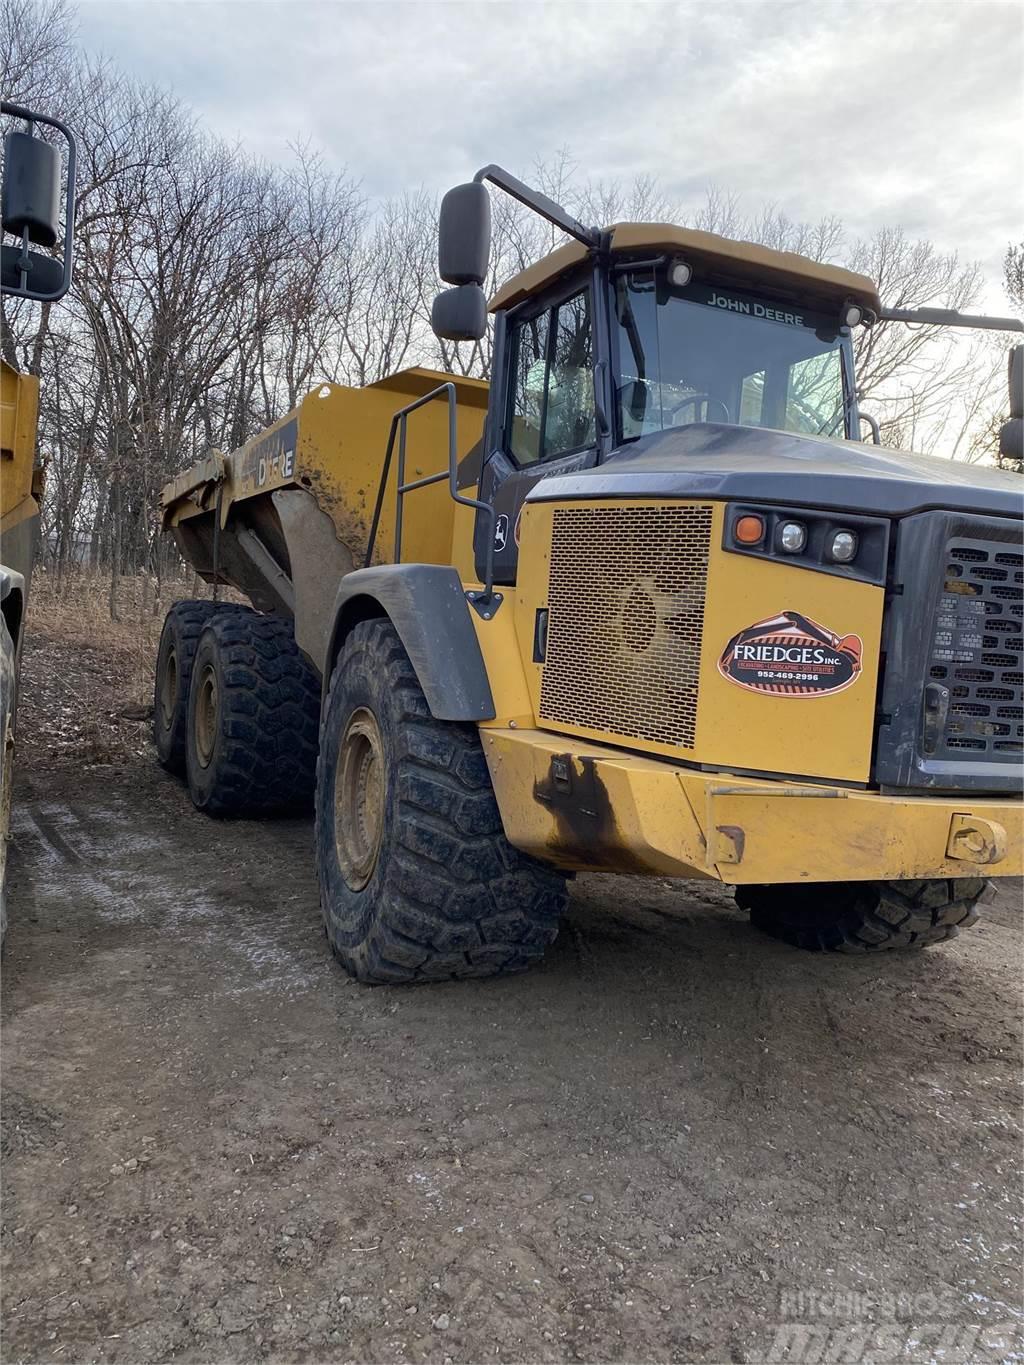 John Deere 410E Articulated Dump Trucks (ADTs)